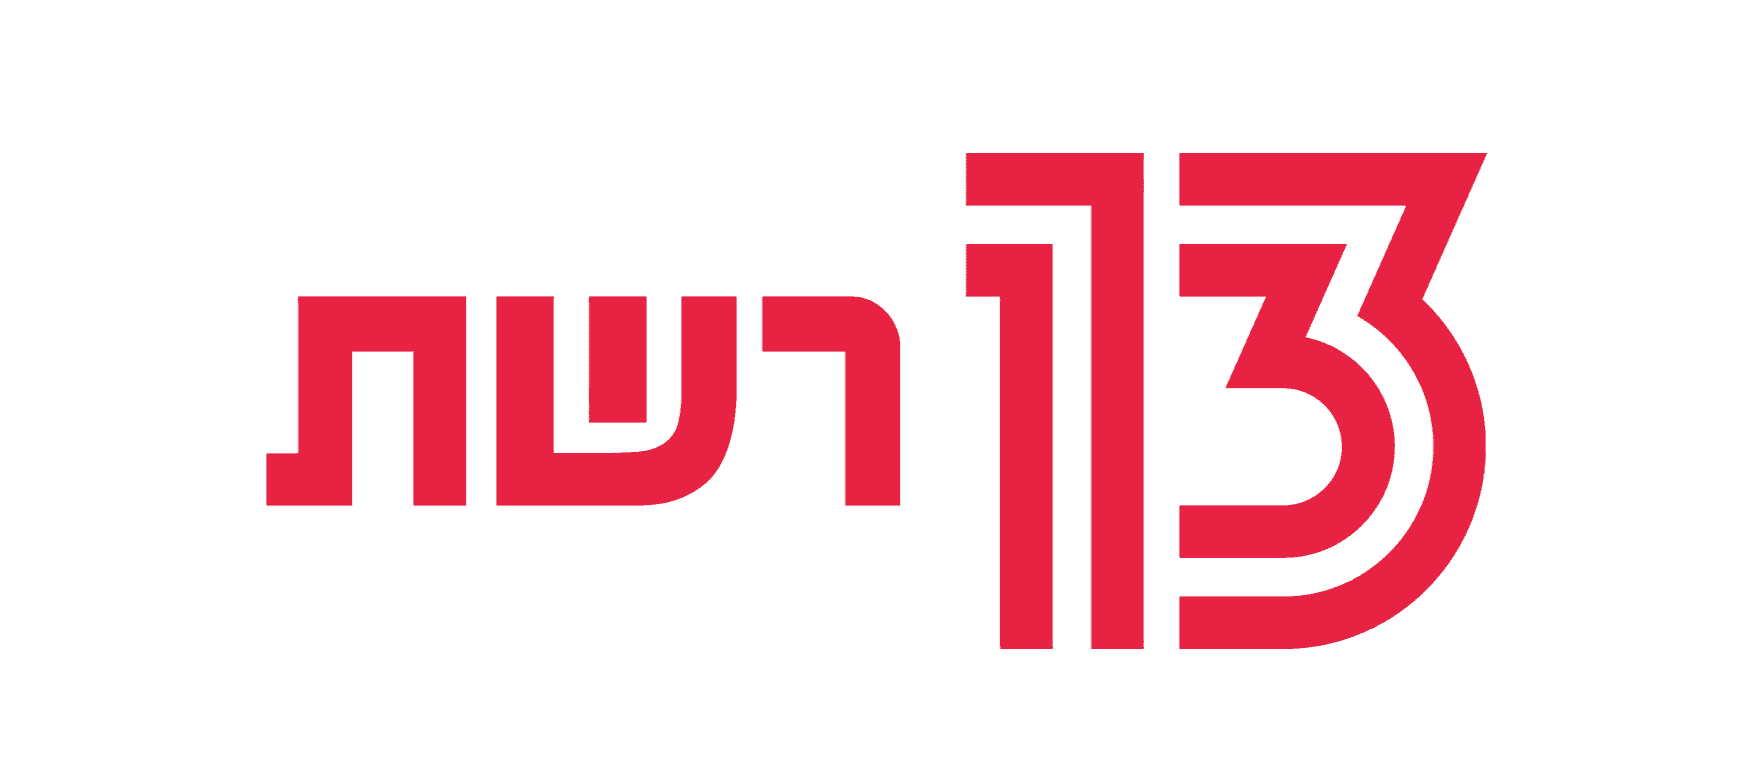 לוגו רשת 13